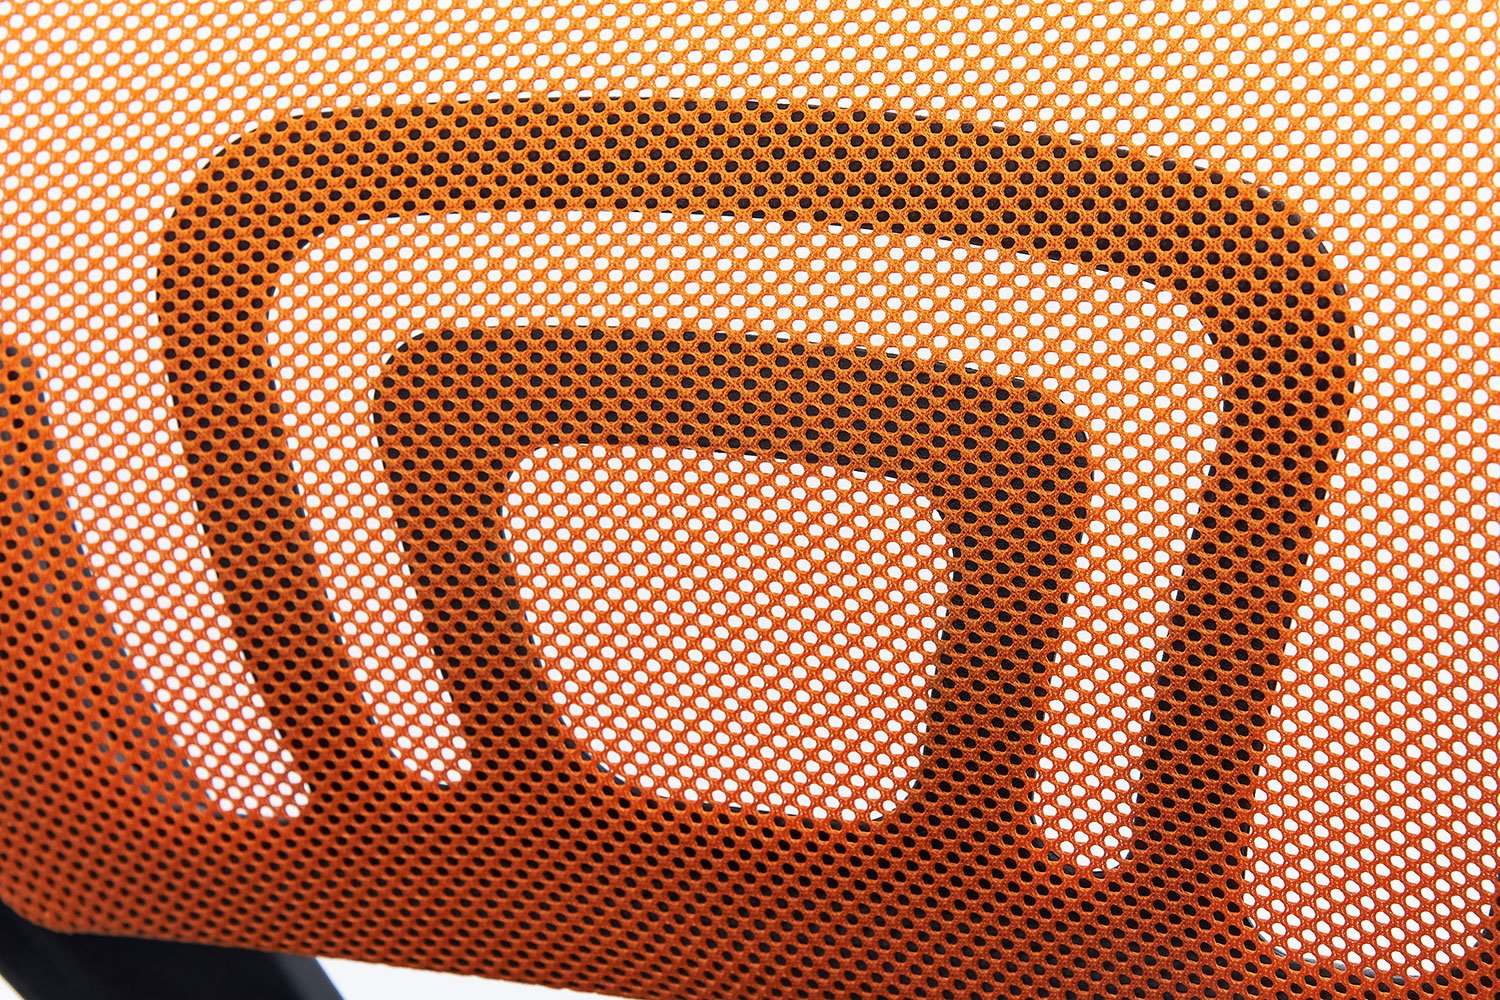 Компьютерное кресло Hoff Brian, оранжевый/черный